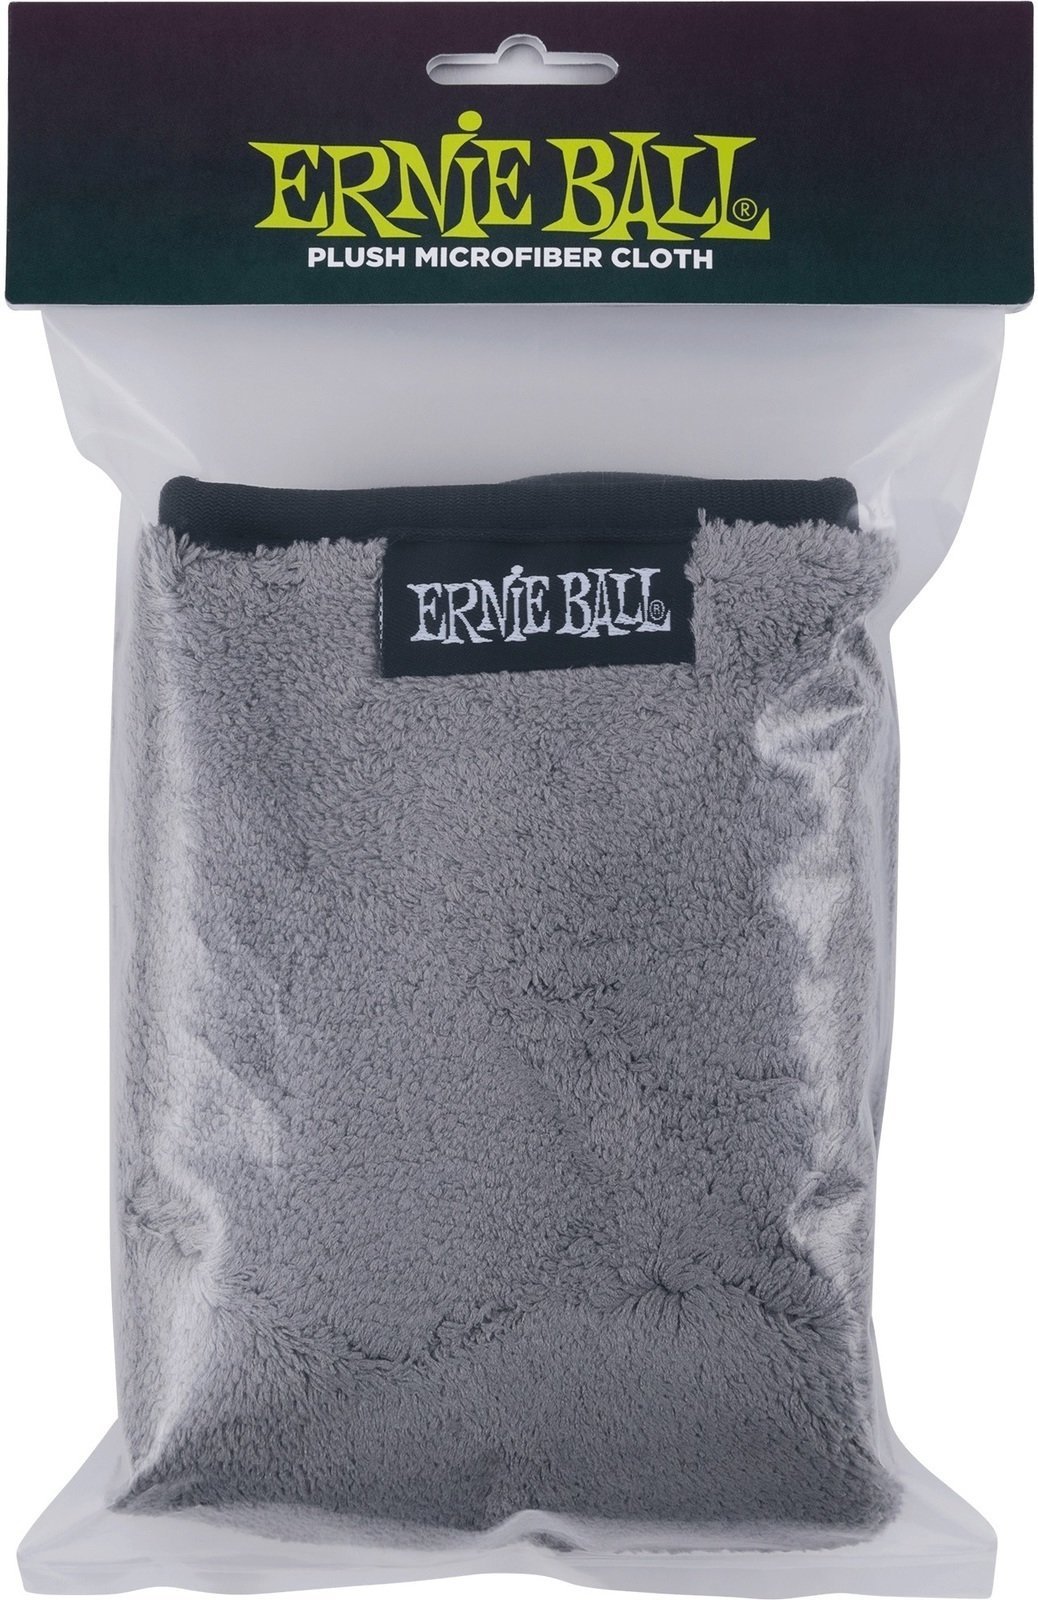 Čistící prostředek Ernie Ball 4219 Plush Microfiber Cloth